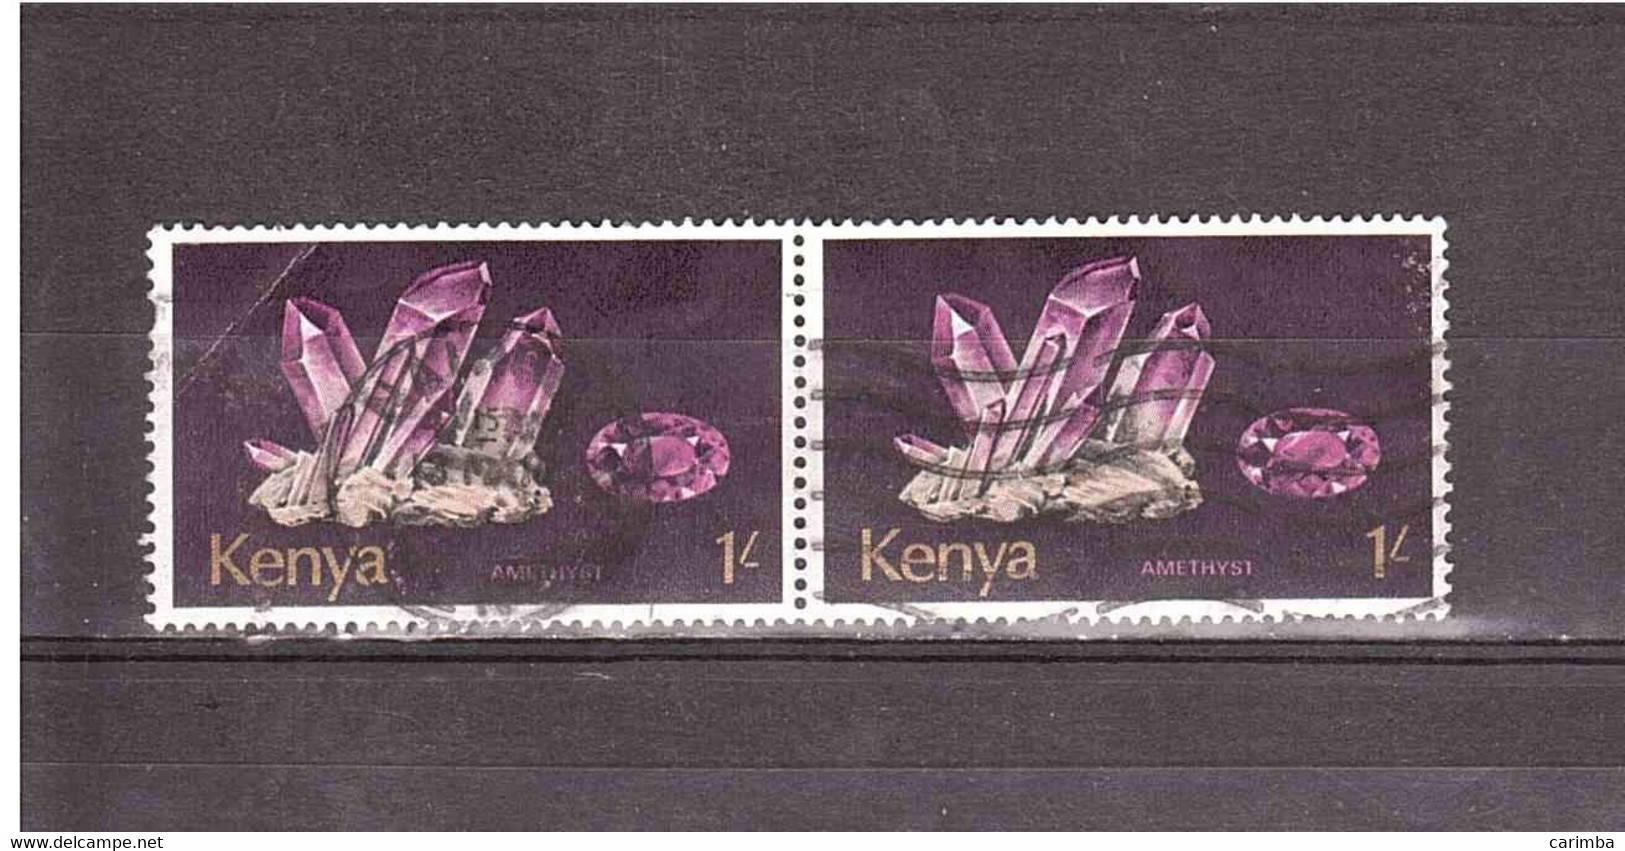 KENYA 1977 AMETHYST - Minéraux